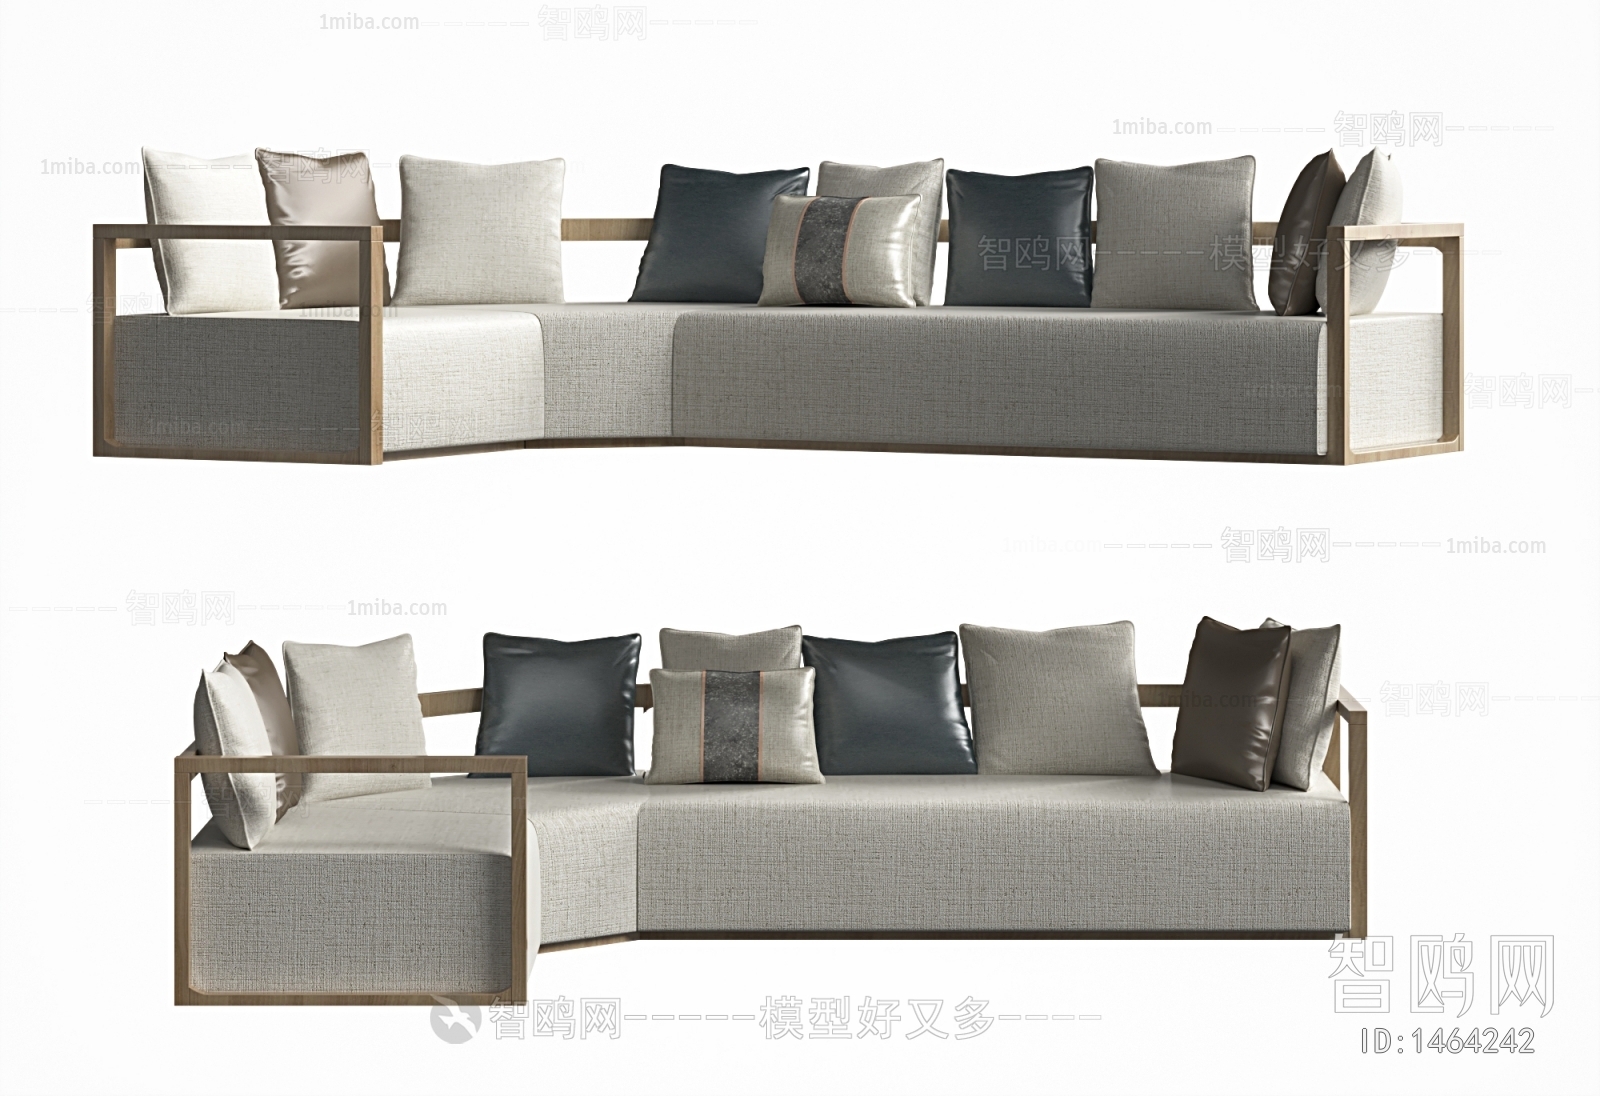 New Chinese Style Corner Sofa